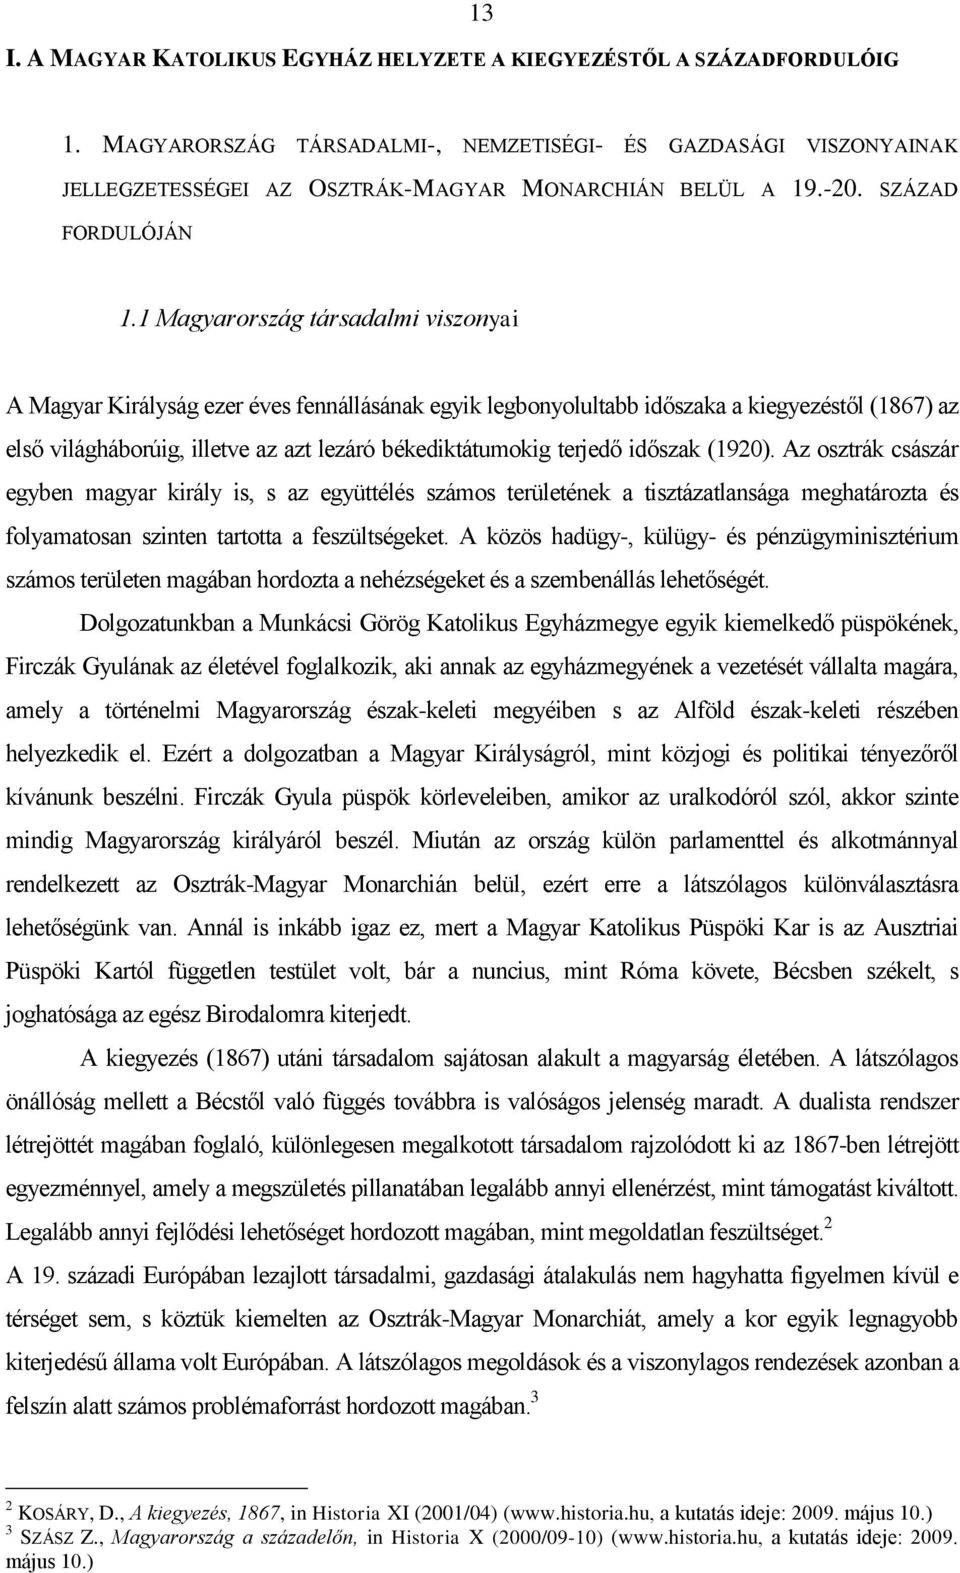 1 Magyarország társadalmi viszonyai A Magyar Királyság ezer éves fennállásának egyik legbonyolultabb időszaka a kiegyezéstől (1867) az első világháborúig, illetve az azt lezáró békediktátumokig